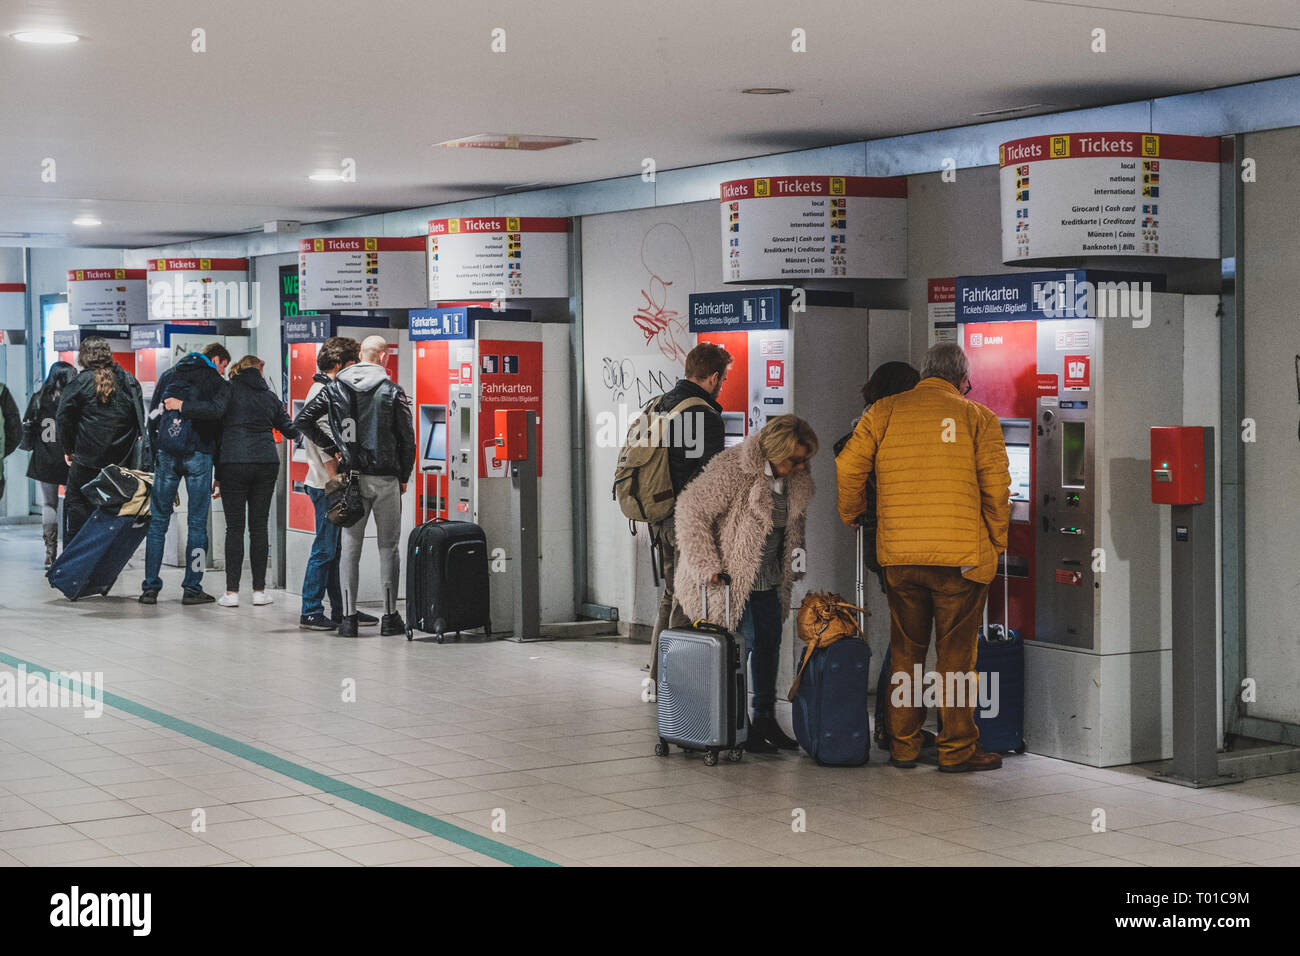 Berlin, Deutschland - März 2019: Personen mit Gepäck kauf Fahrkarte am Automaten in der Nähe von Flughafen in Berlin Stockfoto